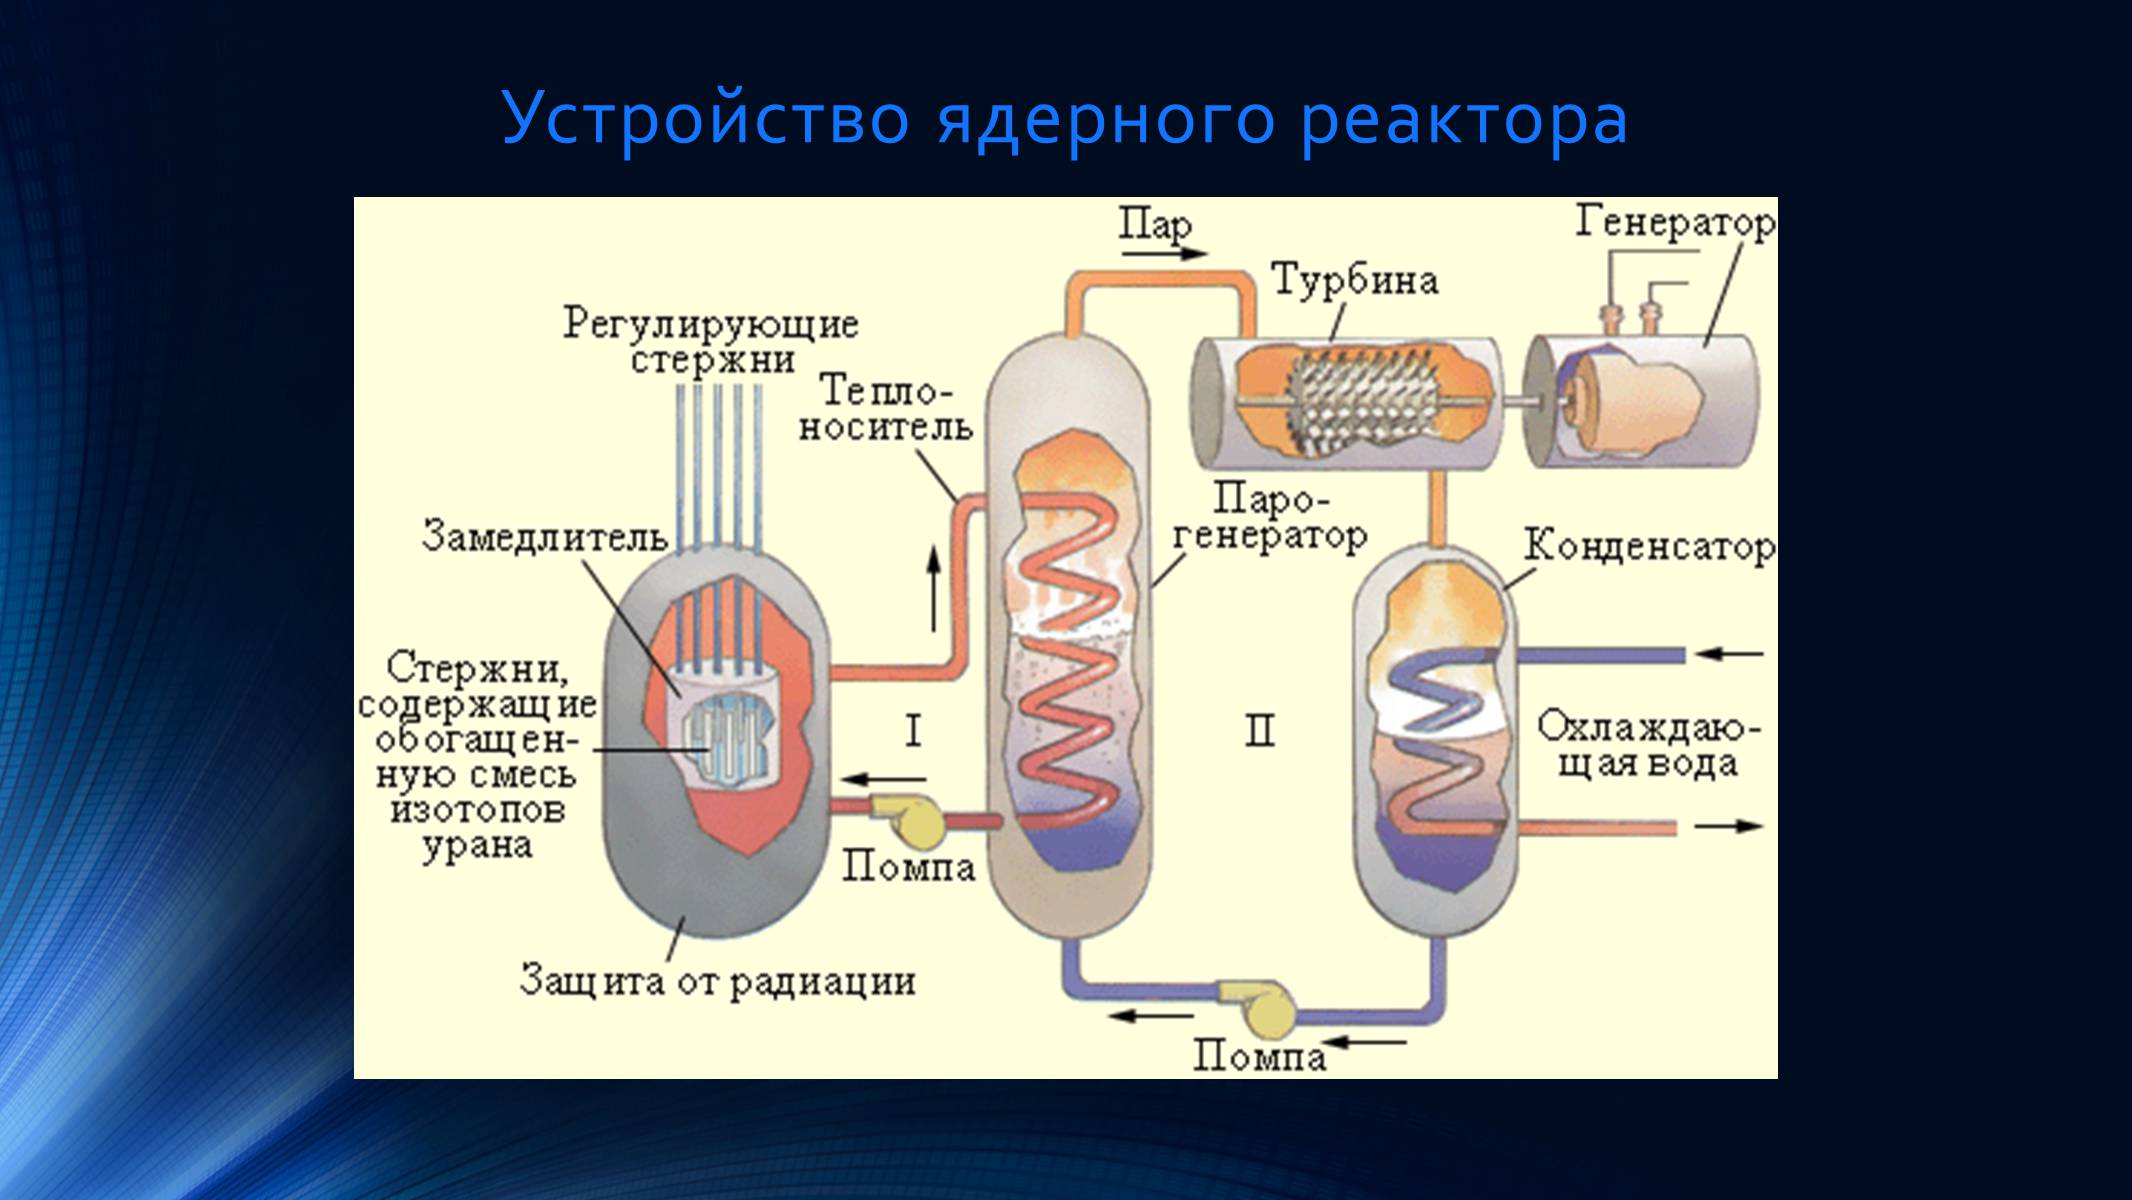 Энергии происходят в ядерном реакторе. АЭС по типу реакторов. Устройство ядерного реактора. Типы ядерных реакторов. Типы конструкций атомных реакторов.